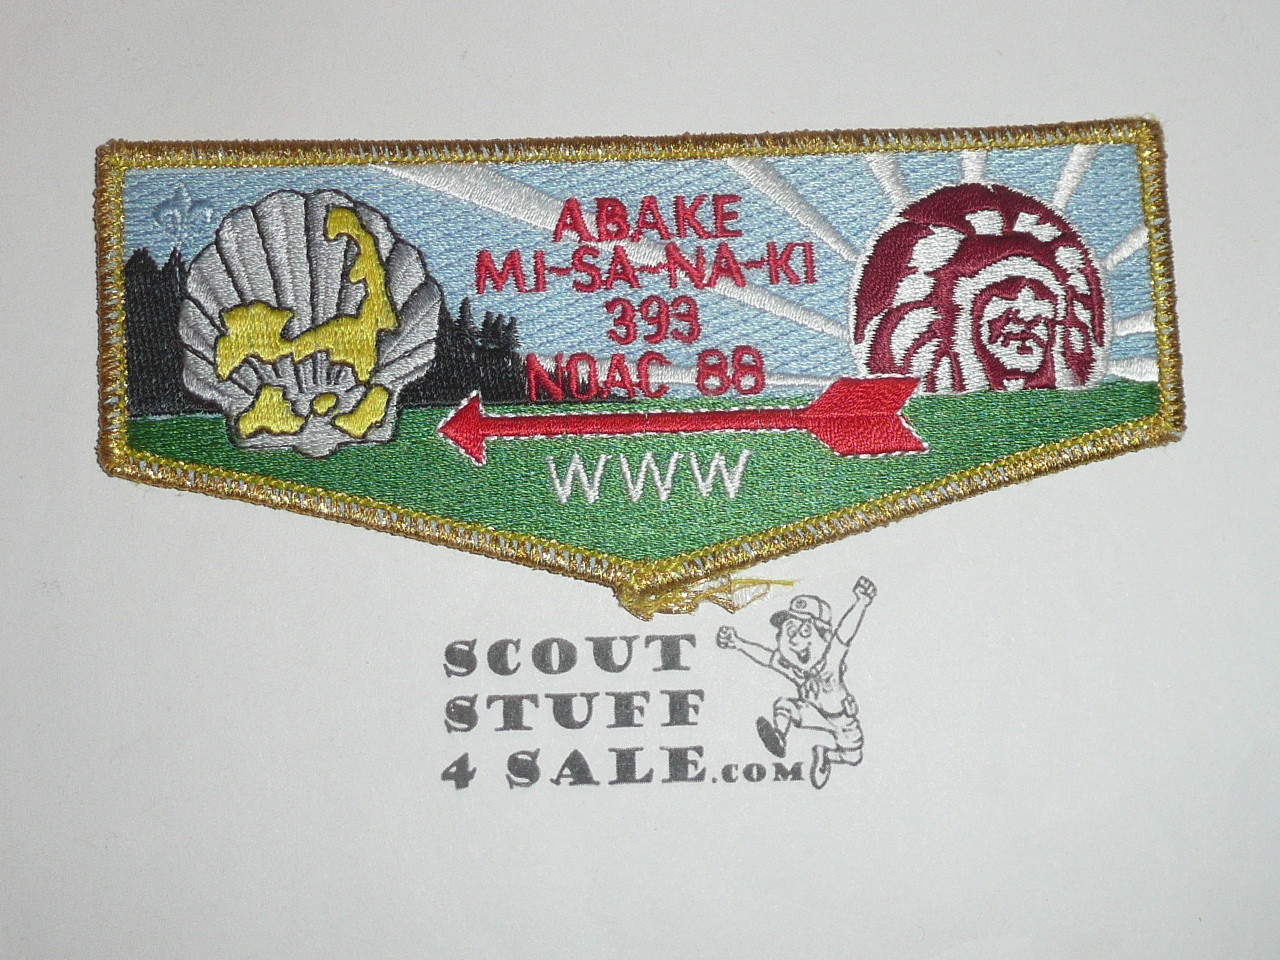 Order of the Arrow Lodge #393 Abake-Mi-Sa-Na-Ki s8 1988 NOAC Flap Patch - Boy Scout